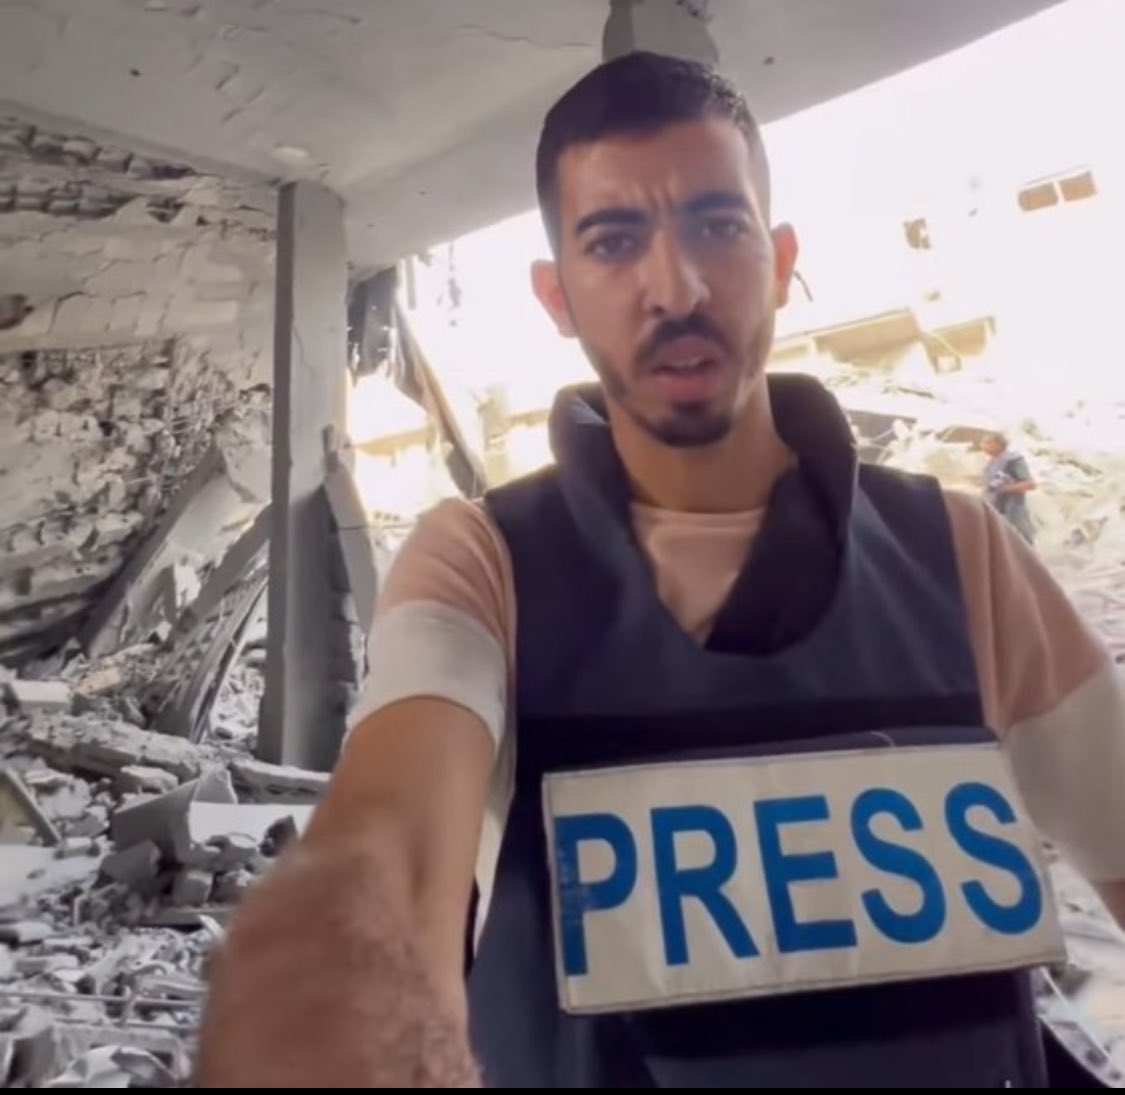 El periodista Saleh al-Faforawi es la última víctima de los ataques israelíes en Rafah. Ha sido asesinado trágicamente por sexta vez desde el inicio de este conflicto. @UNHumanWrongs